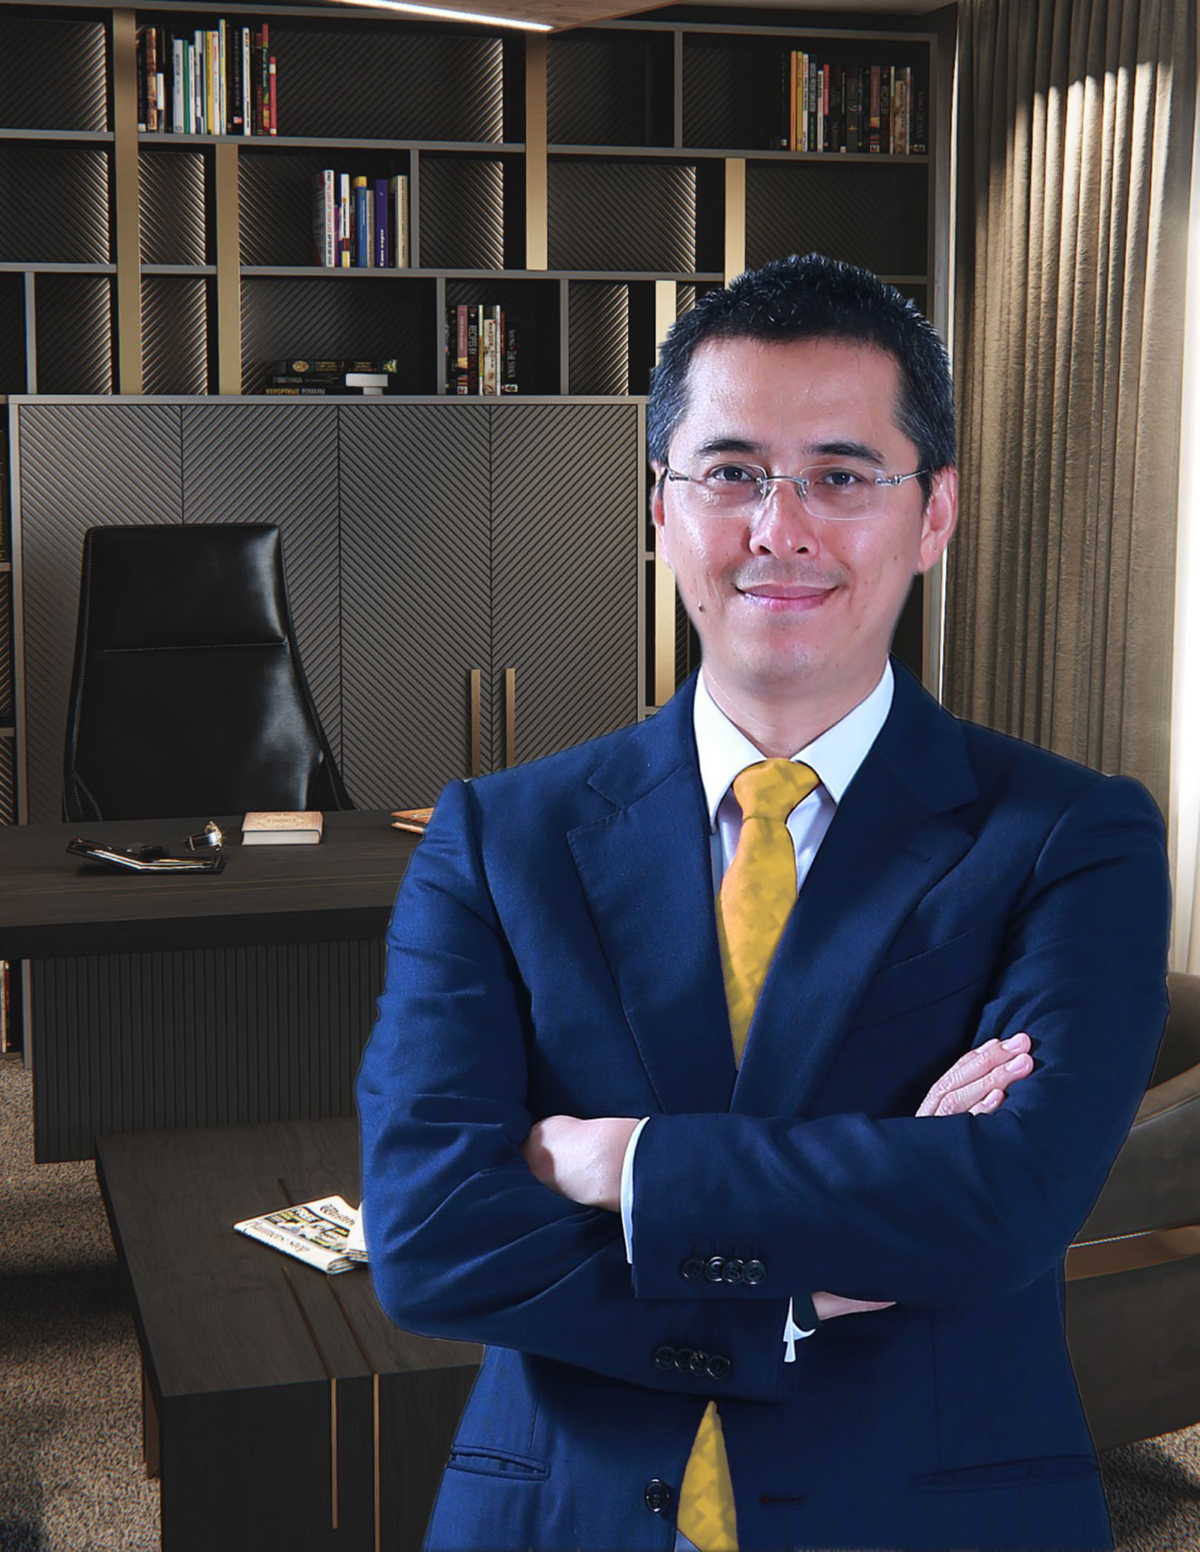 Ông Đỗ Tuấn Anh - Tổng giám đốc Tập đoàn KDI Holdings, Phó chủ tịch Ngân hàng Thương mại cổ phần Kỹ thương Việt Nam (Techcombank)